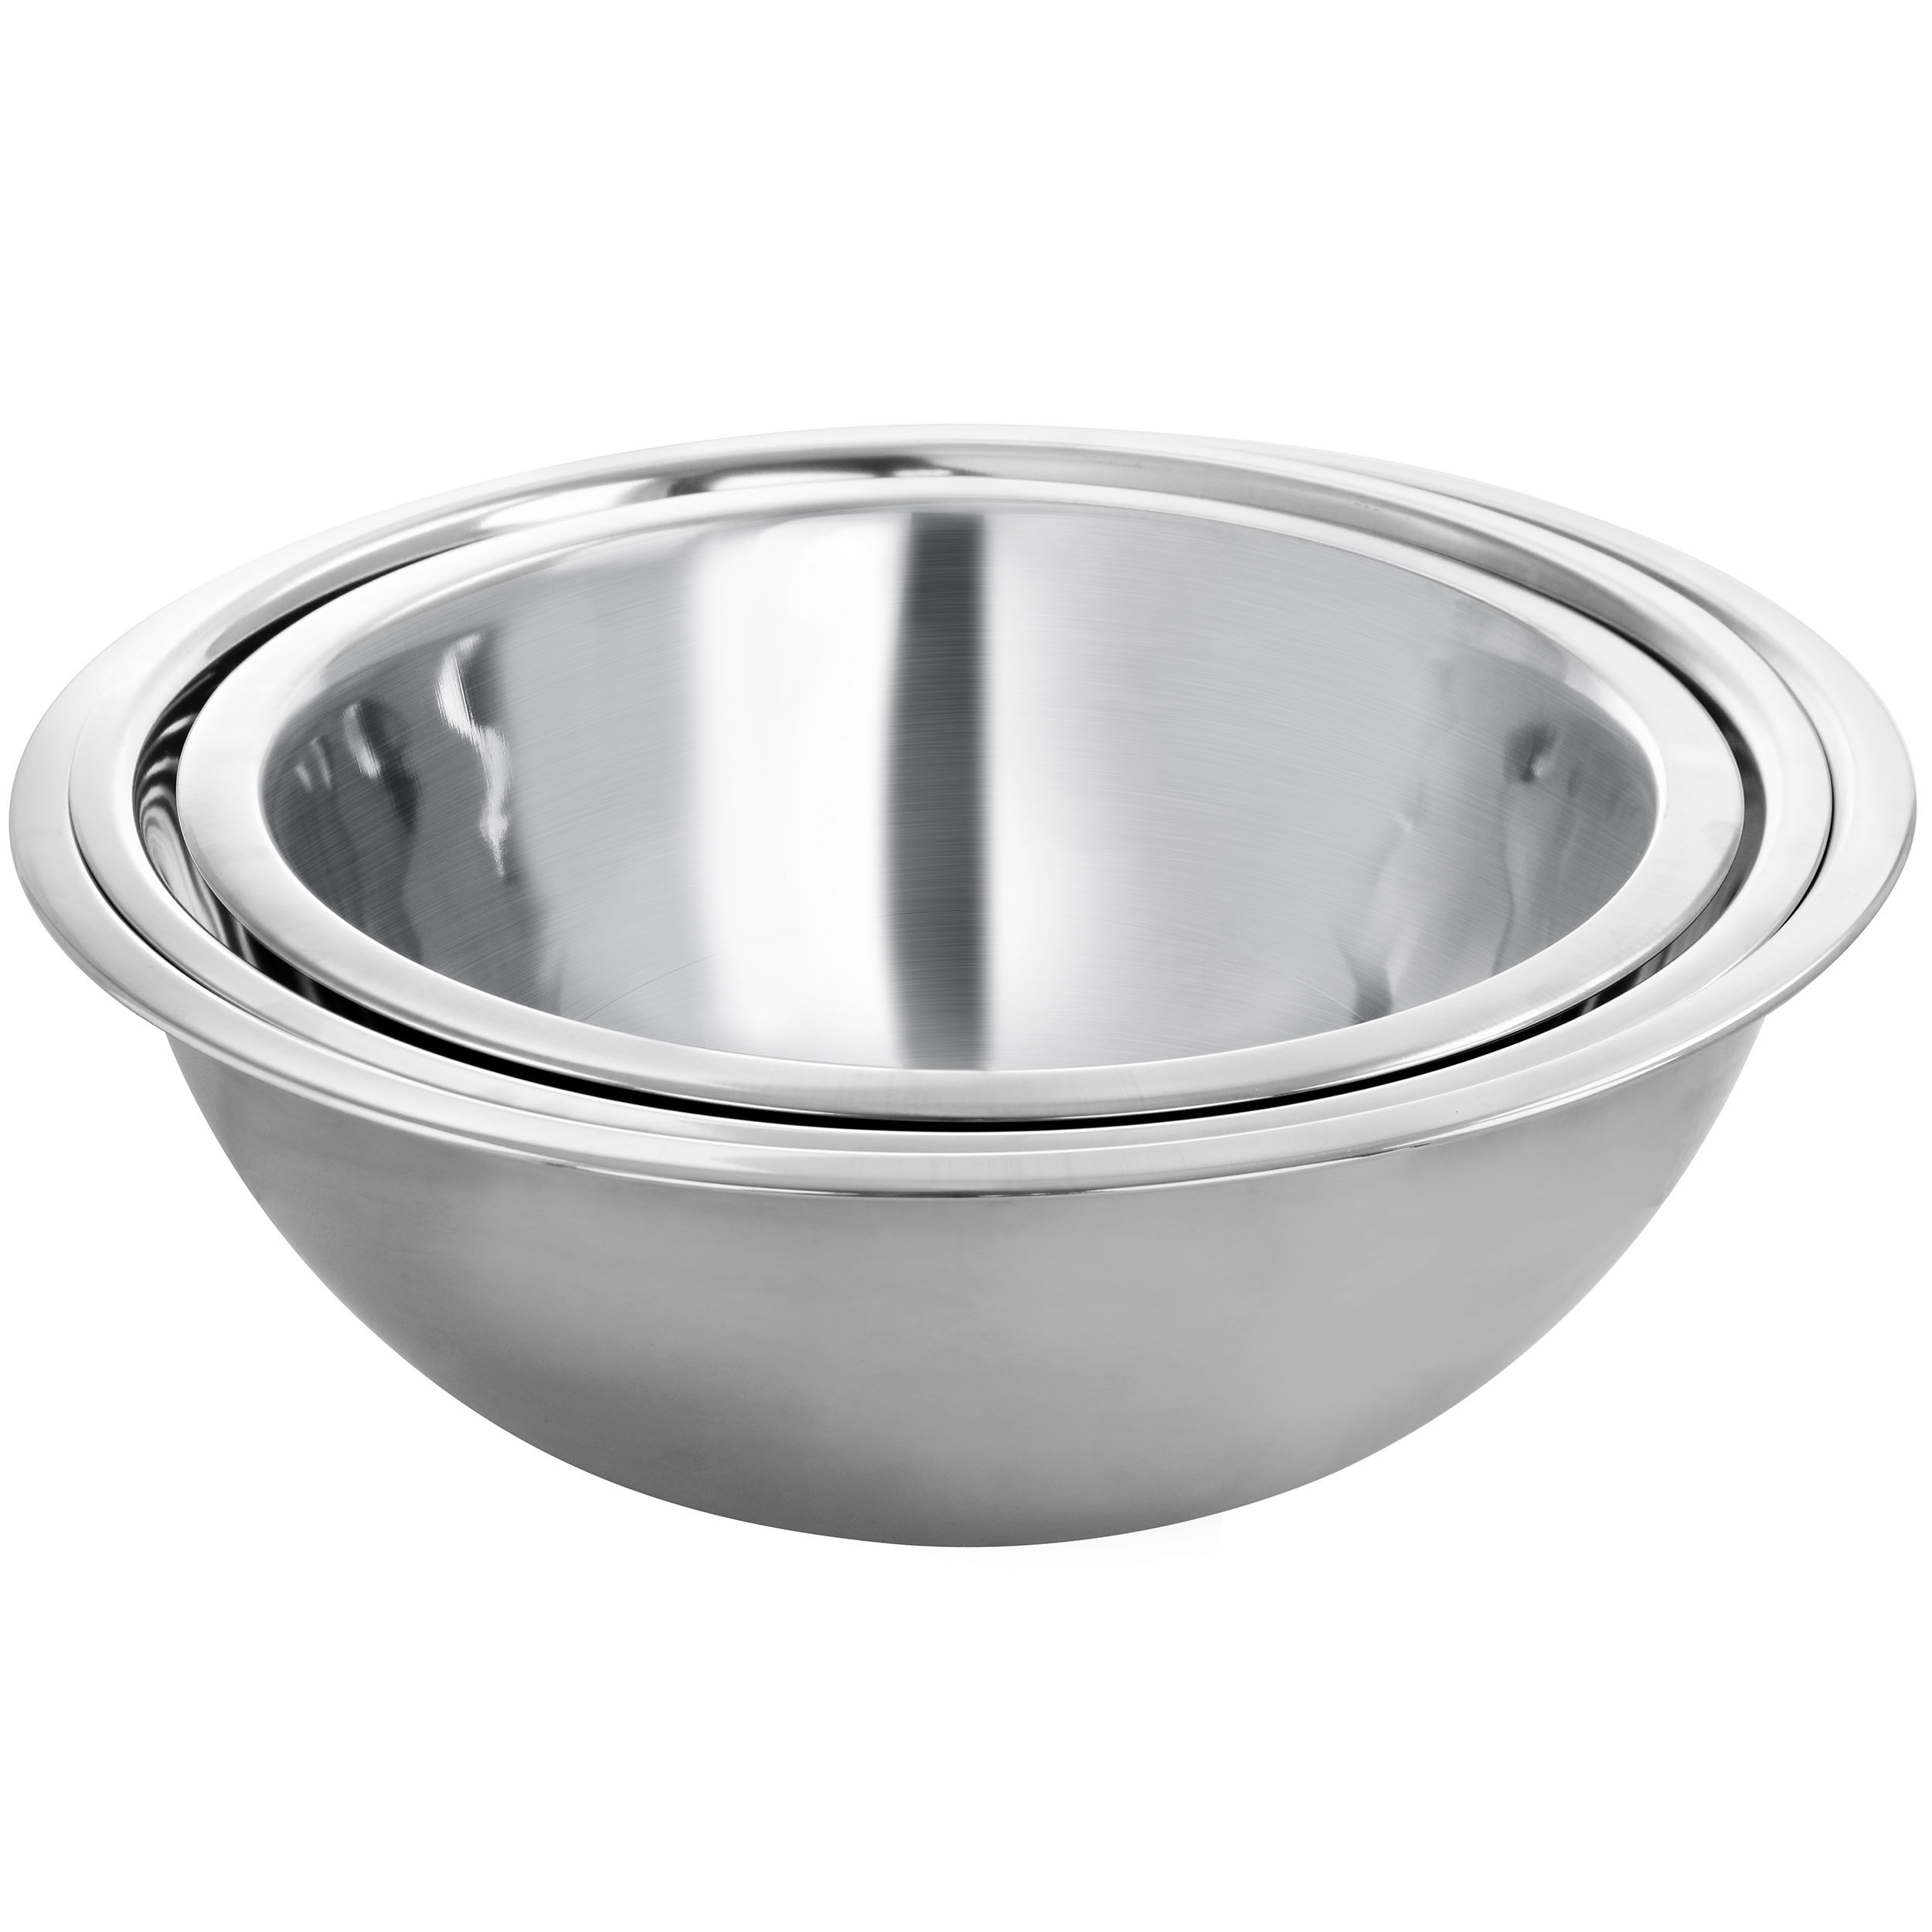 https://assets.wfcdn.com/im/13820929/compr-r85/2187/218752936/martha-stewart-3-piece-stainless-steel-kitchen-prep-mixing-bowl-set-in-silver.jpg